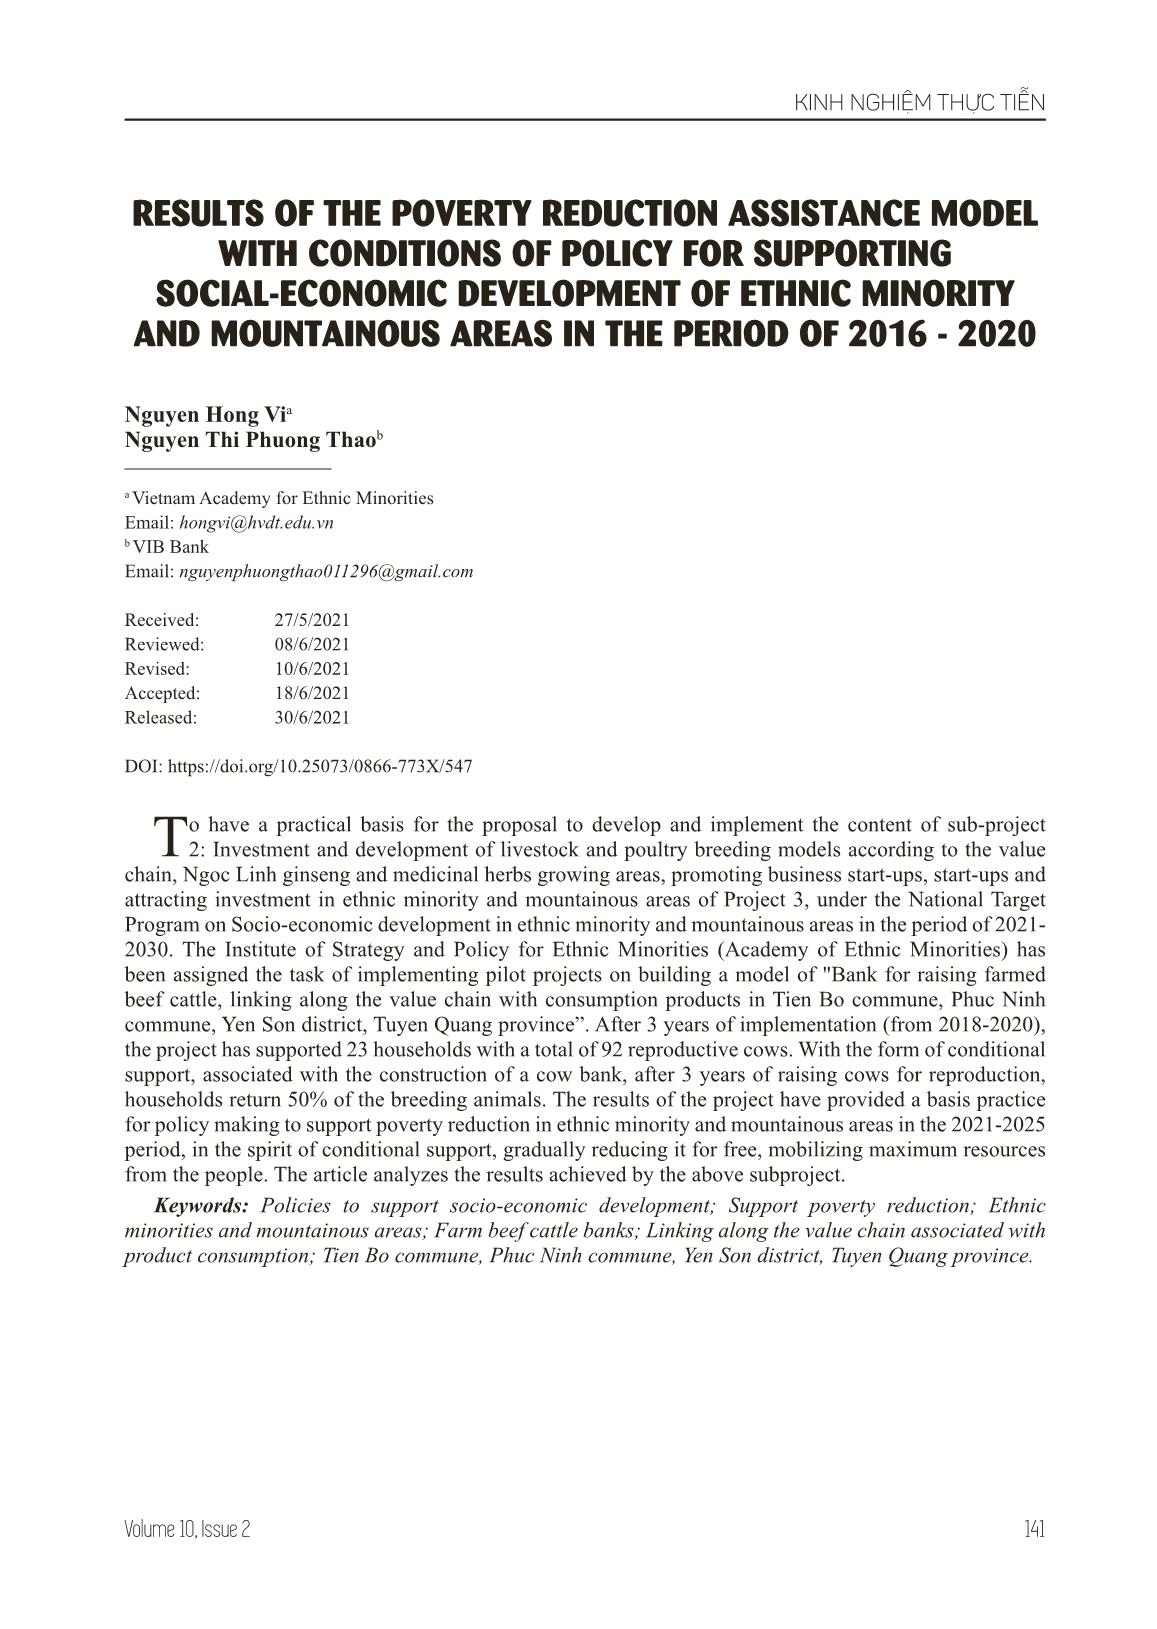 Kết quả mô hình hỗ trợ giảm nghèo gắn với điều kiện chính sách hỗ trợ phát triển kinh tế - xã hội của vùng dân tộc thiểu số và miền núi giai đoạn 2016-2020 trang 1